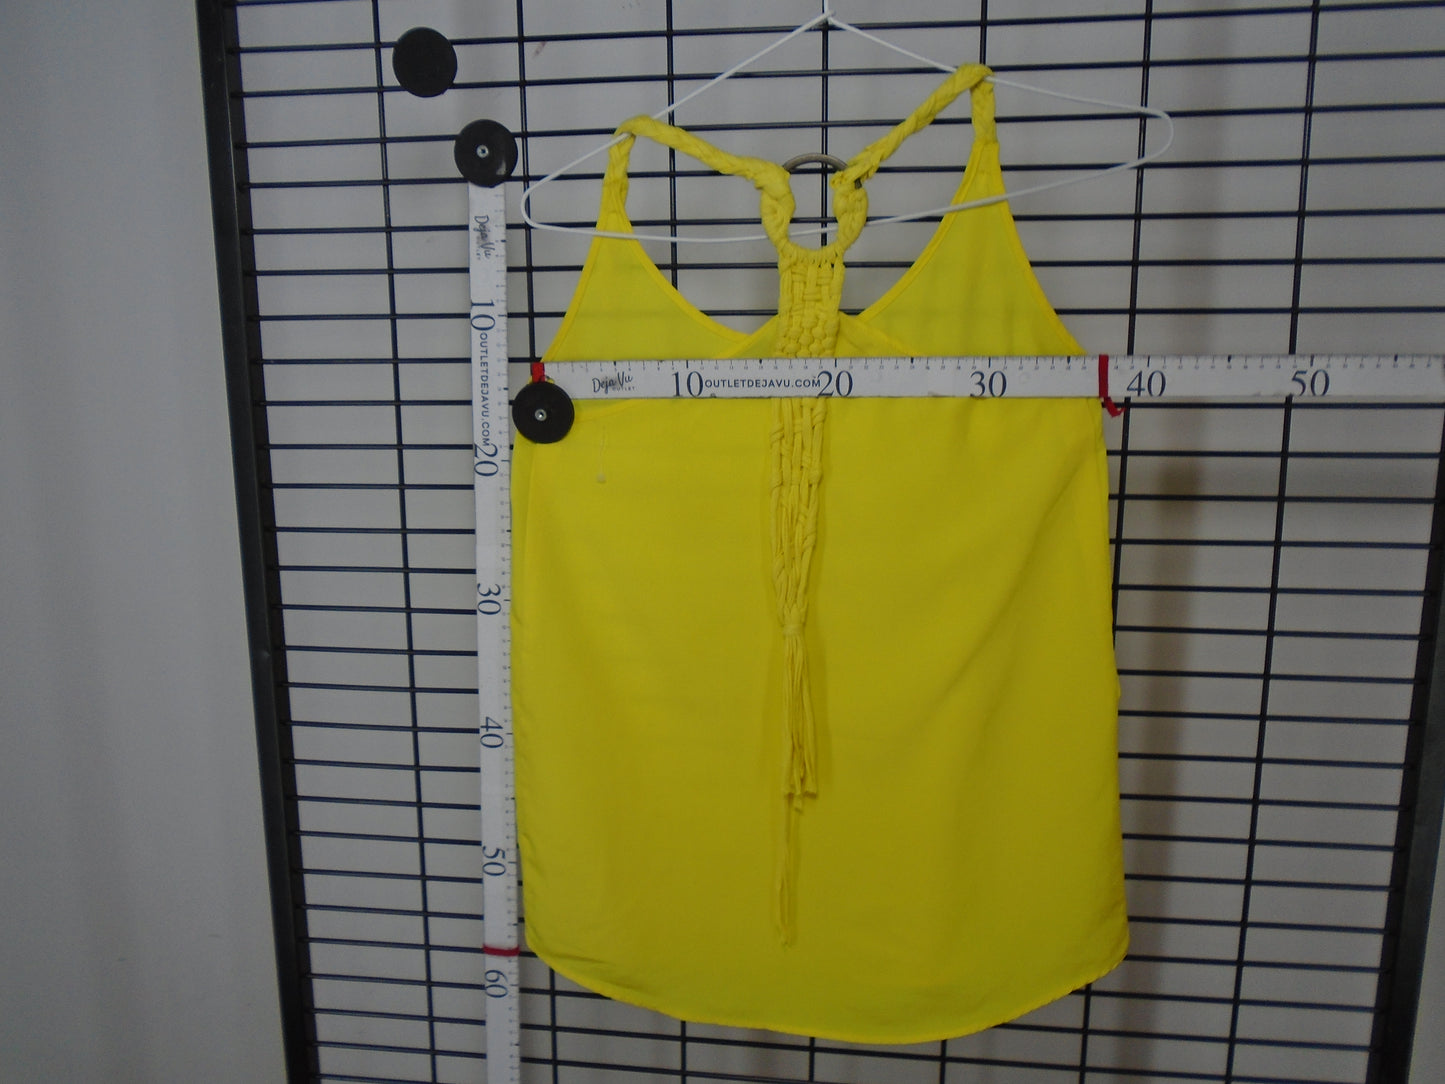 Women's Undershirt Zara. Yellow. XS. Used. Very good condition